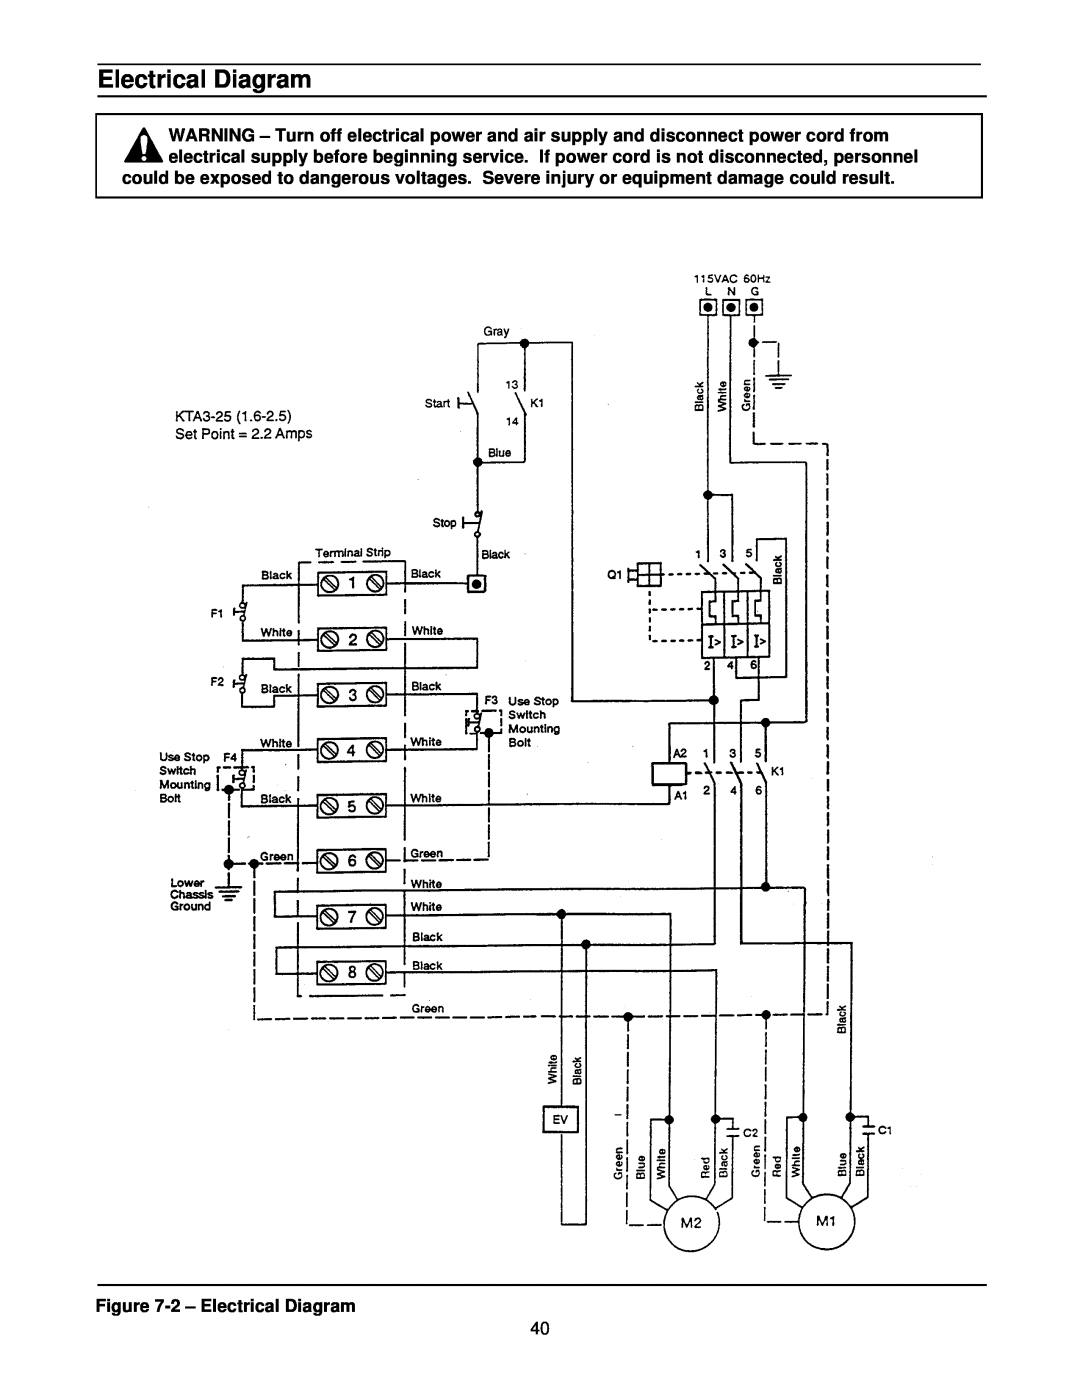 3M 39600 manual Electrical Diagram 